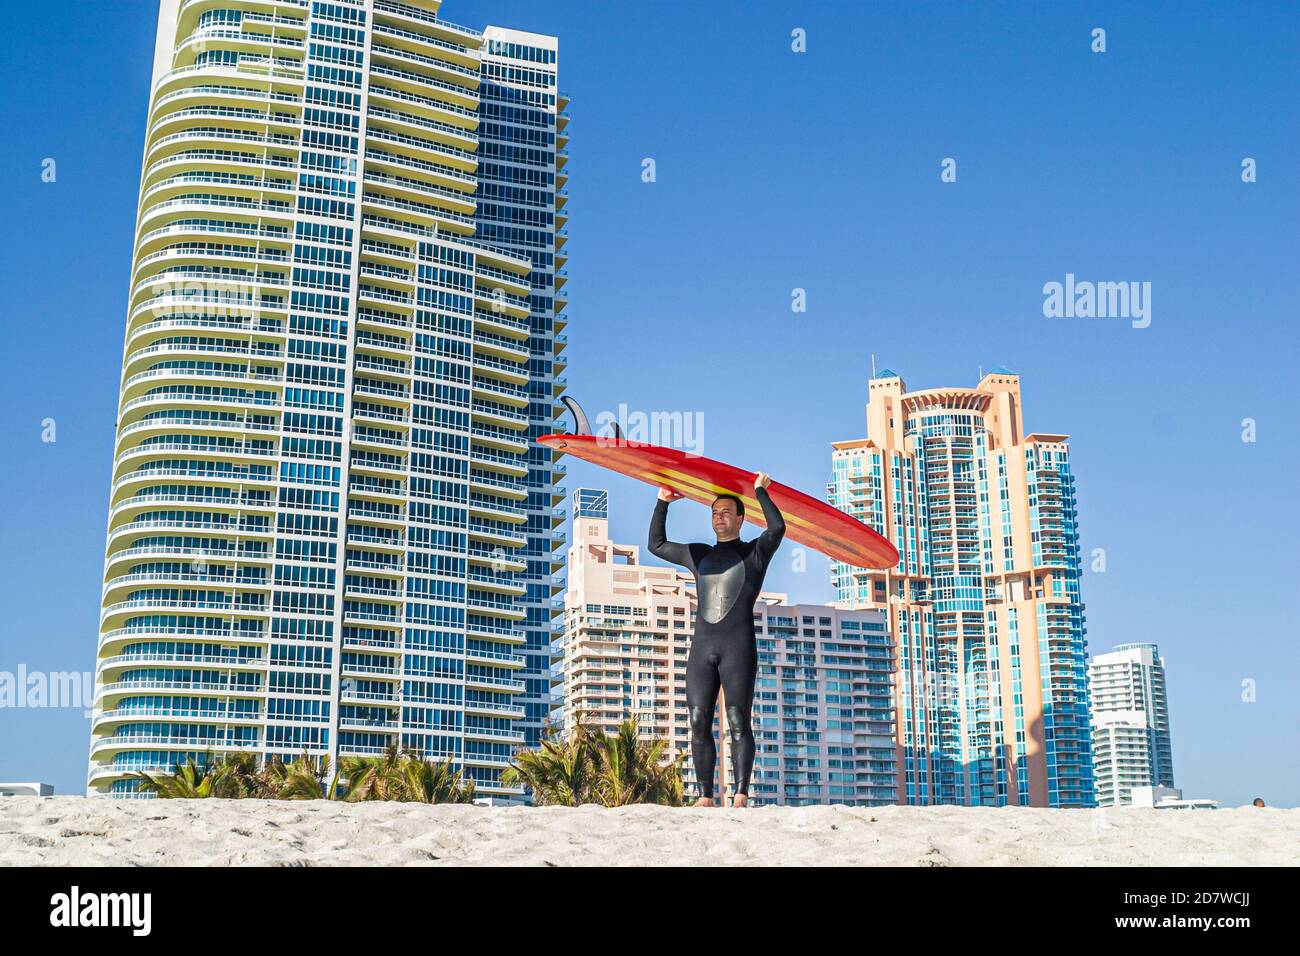 Miami Beach Florida, Atlantikküste, Rettungsschwimmer Station Surfer Mann Surfbrett balancierende Kopf, Hochhaus Gebäude Wohnanlagen, Residenzen Stockfoto